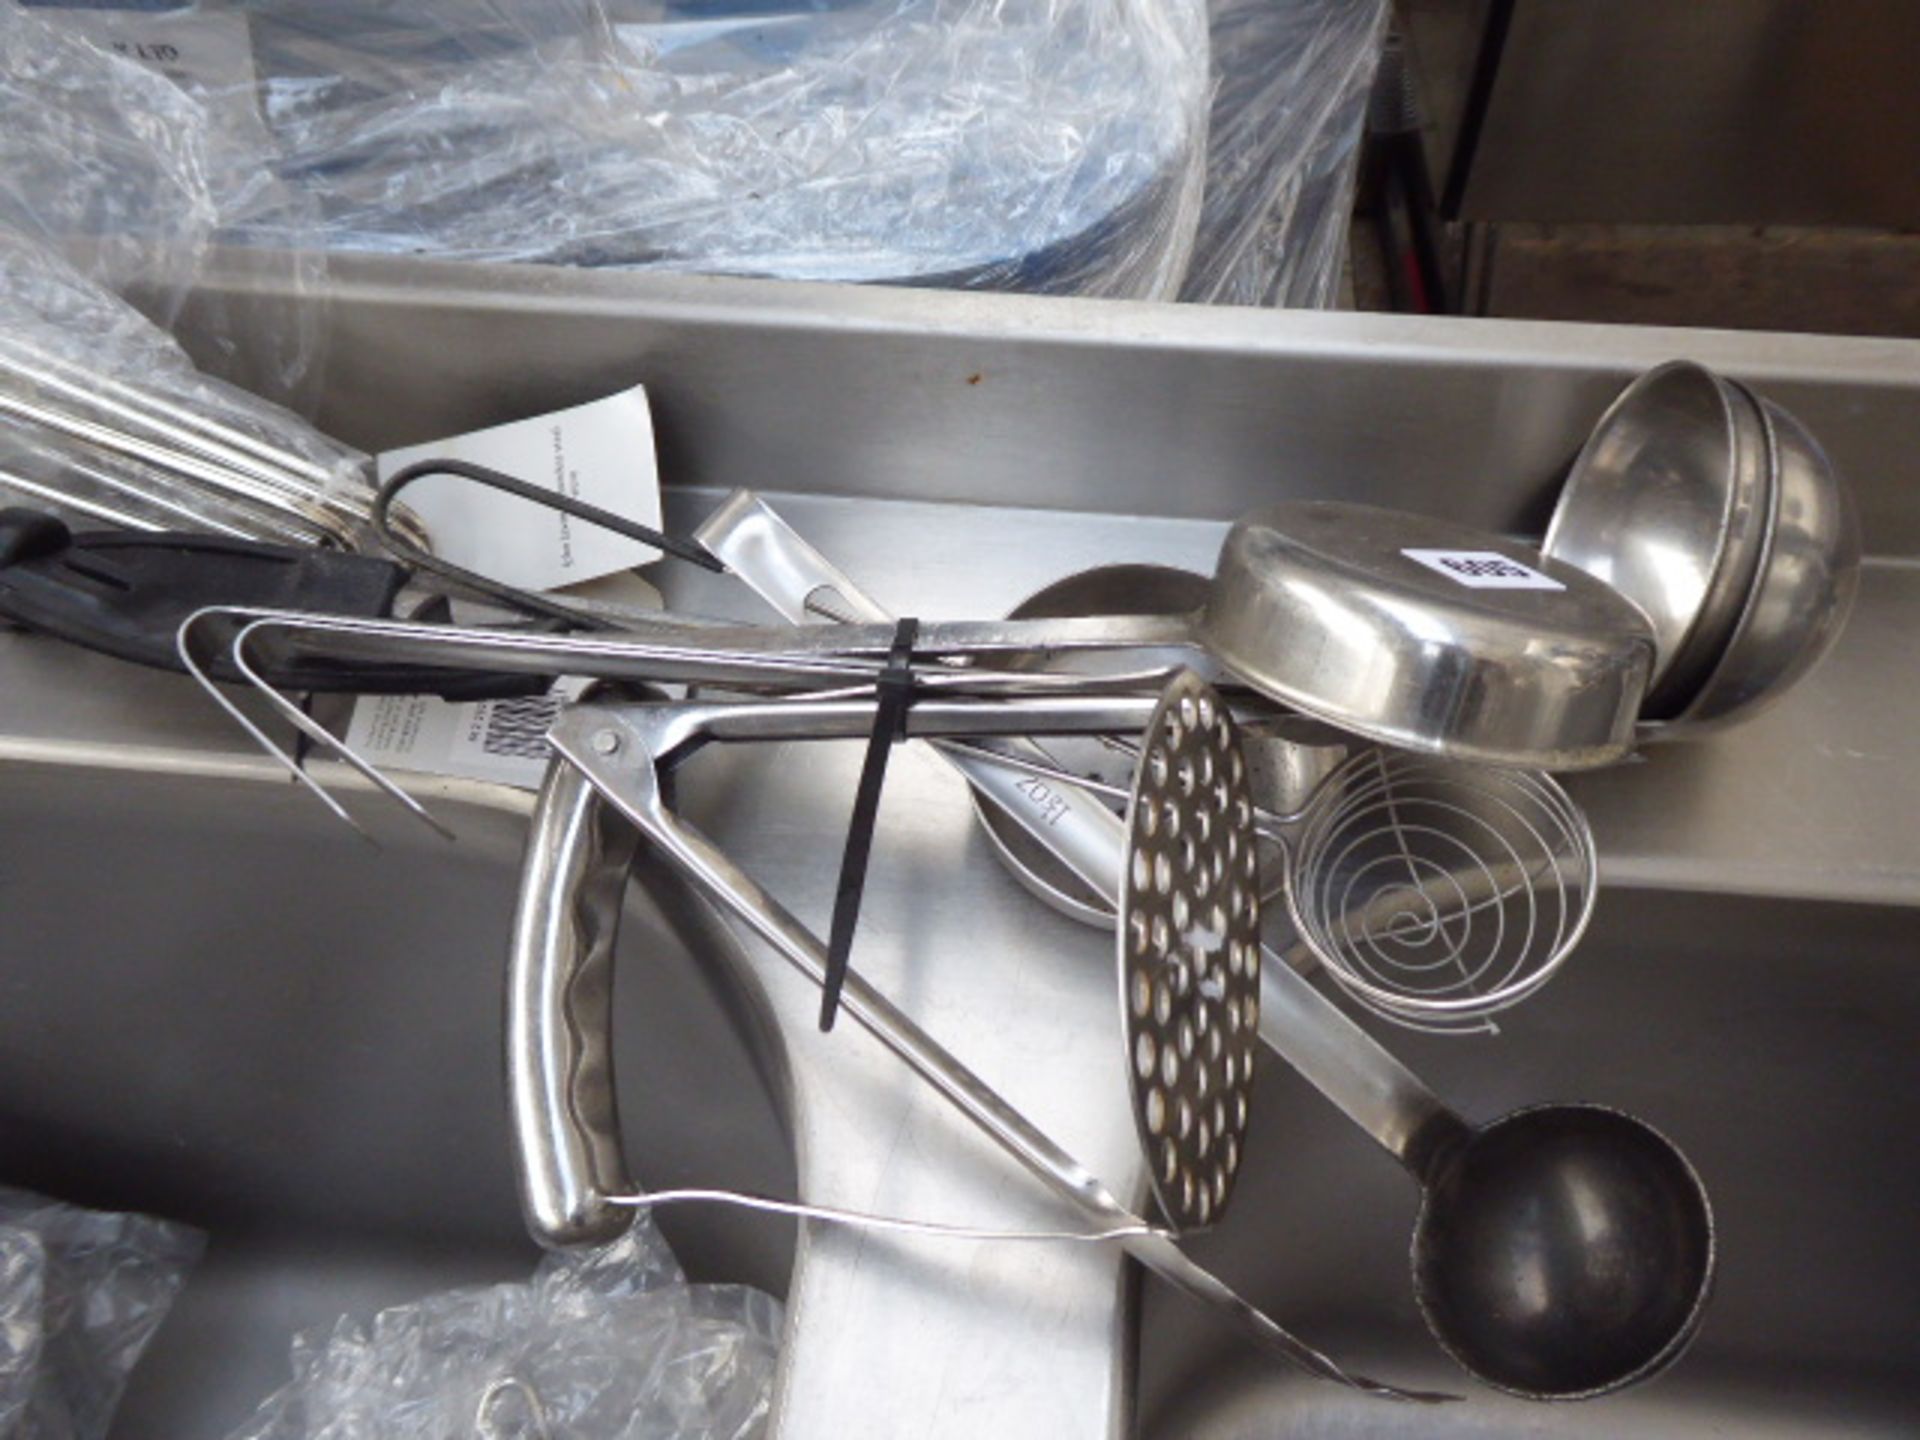 Bundle of assorted chef's utensils